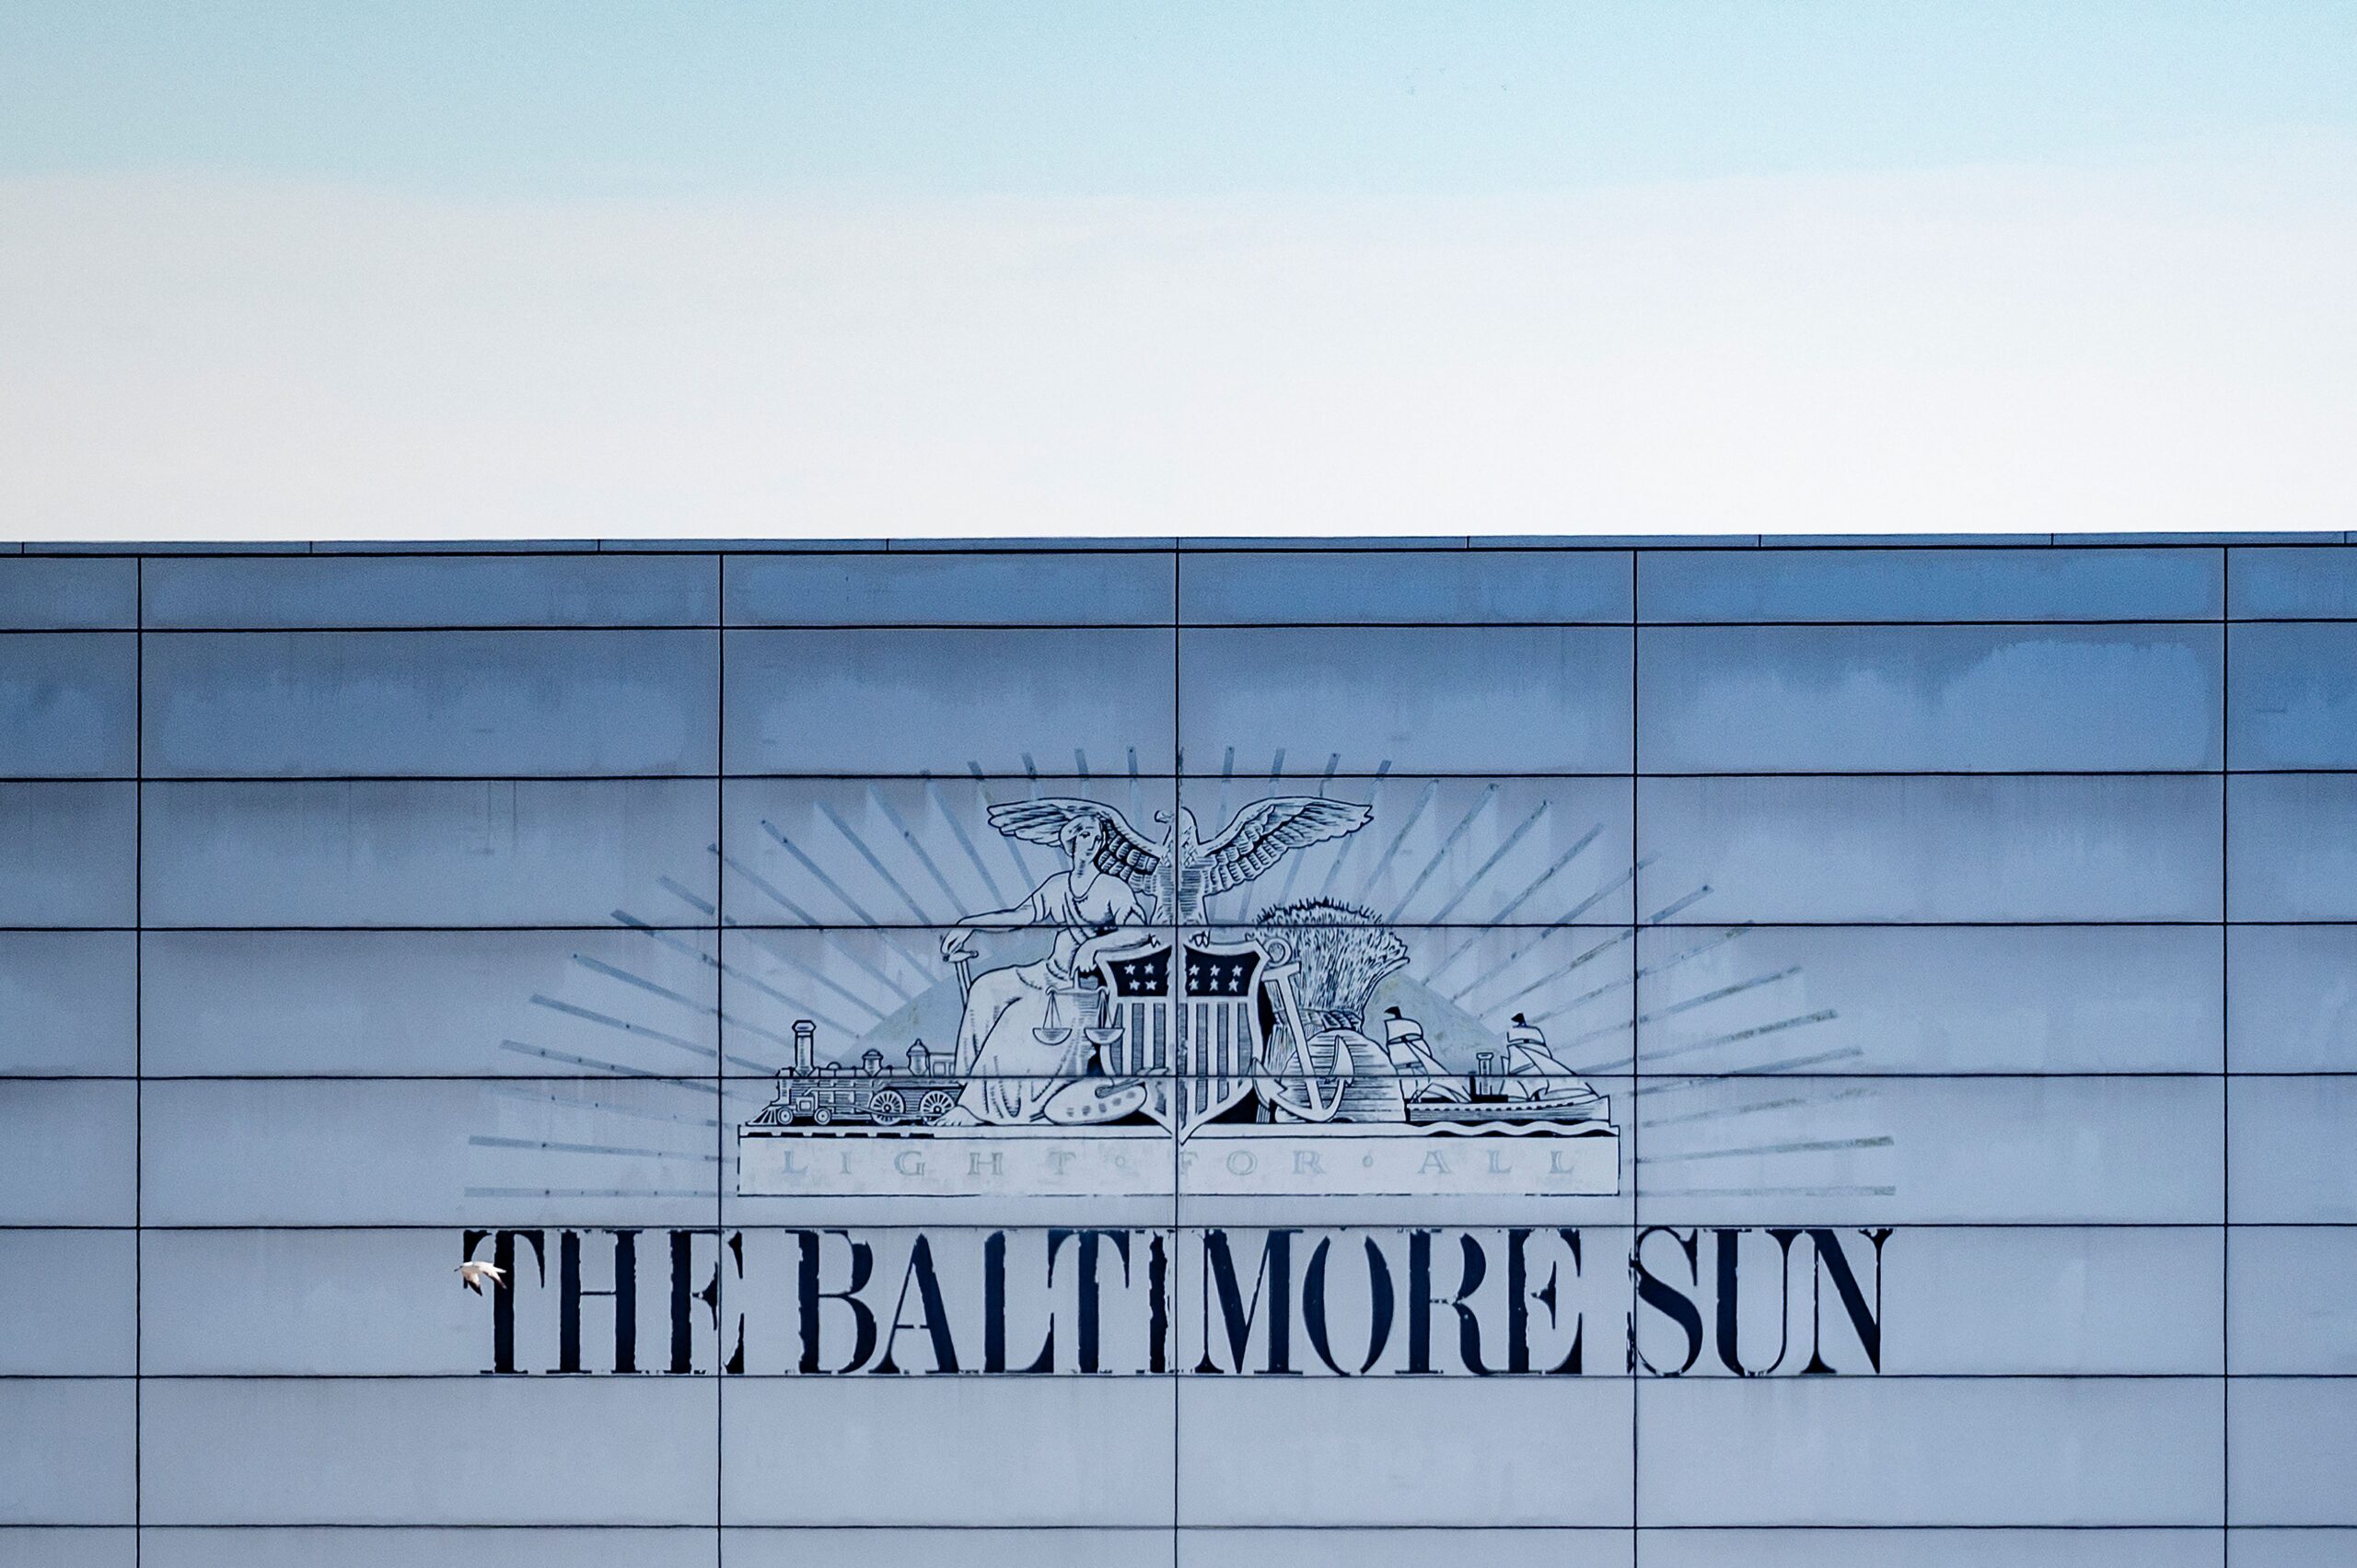 The Baltimore Sun building